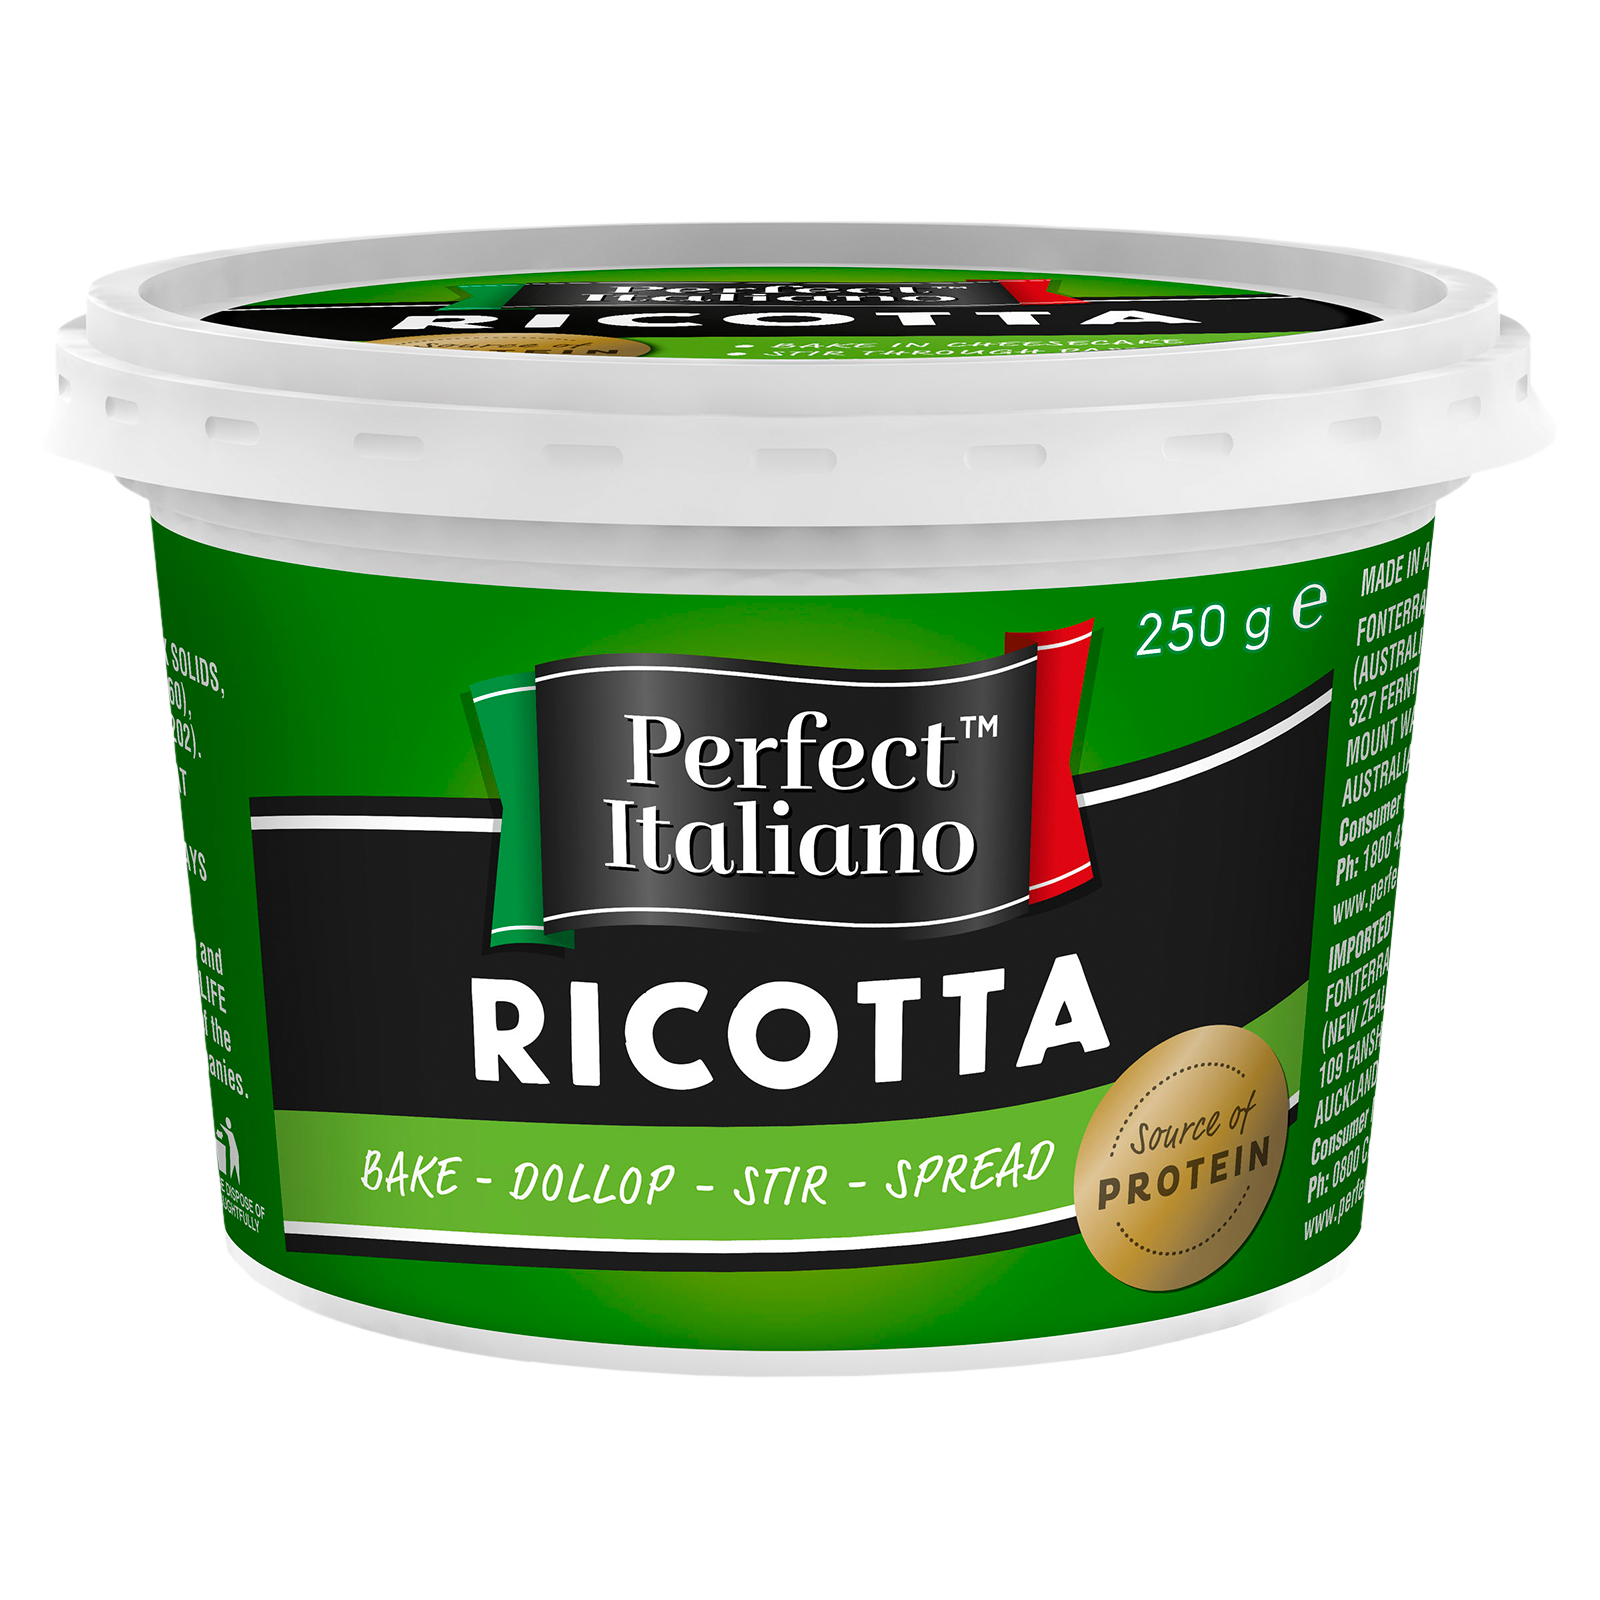 Perfect Italiano Ricotta Original 250g container